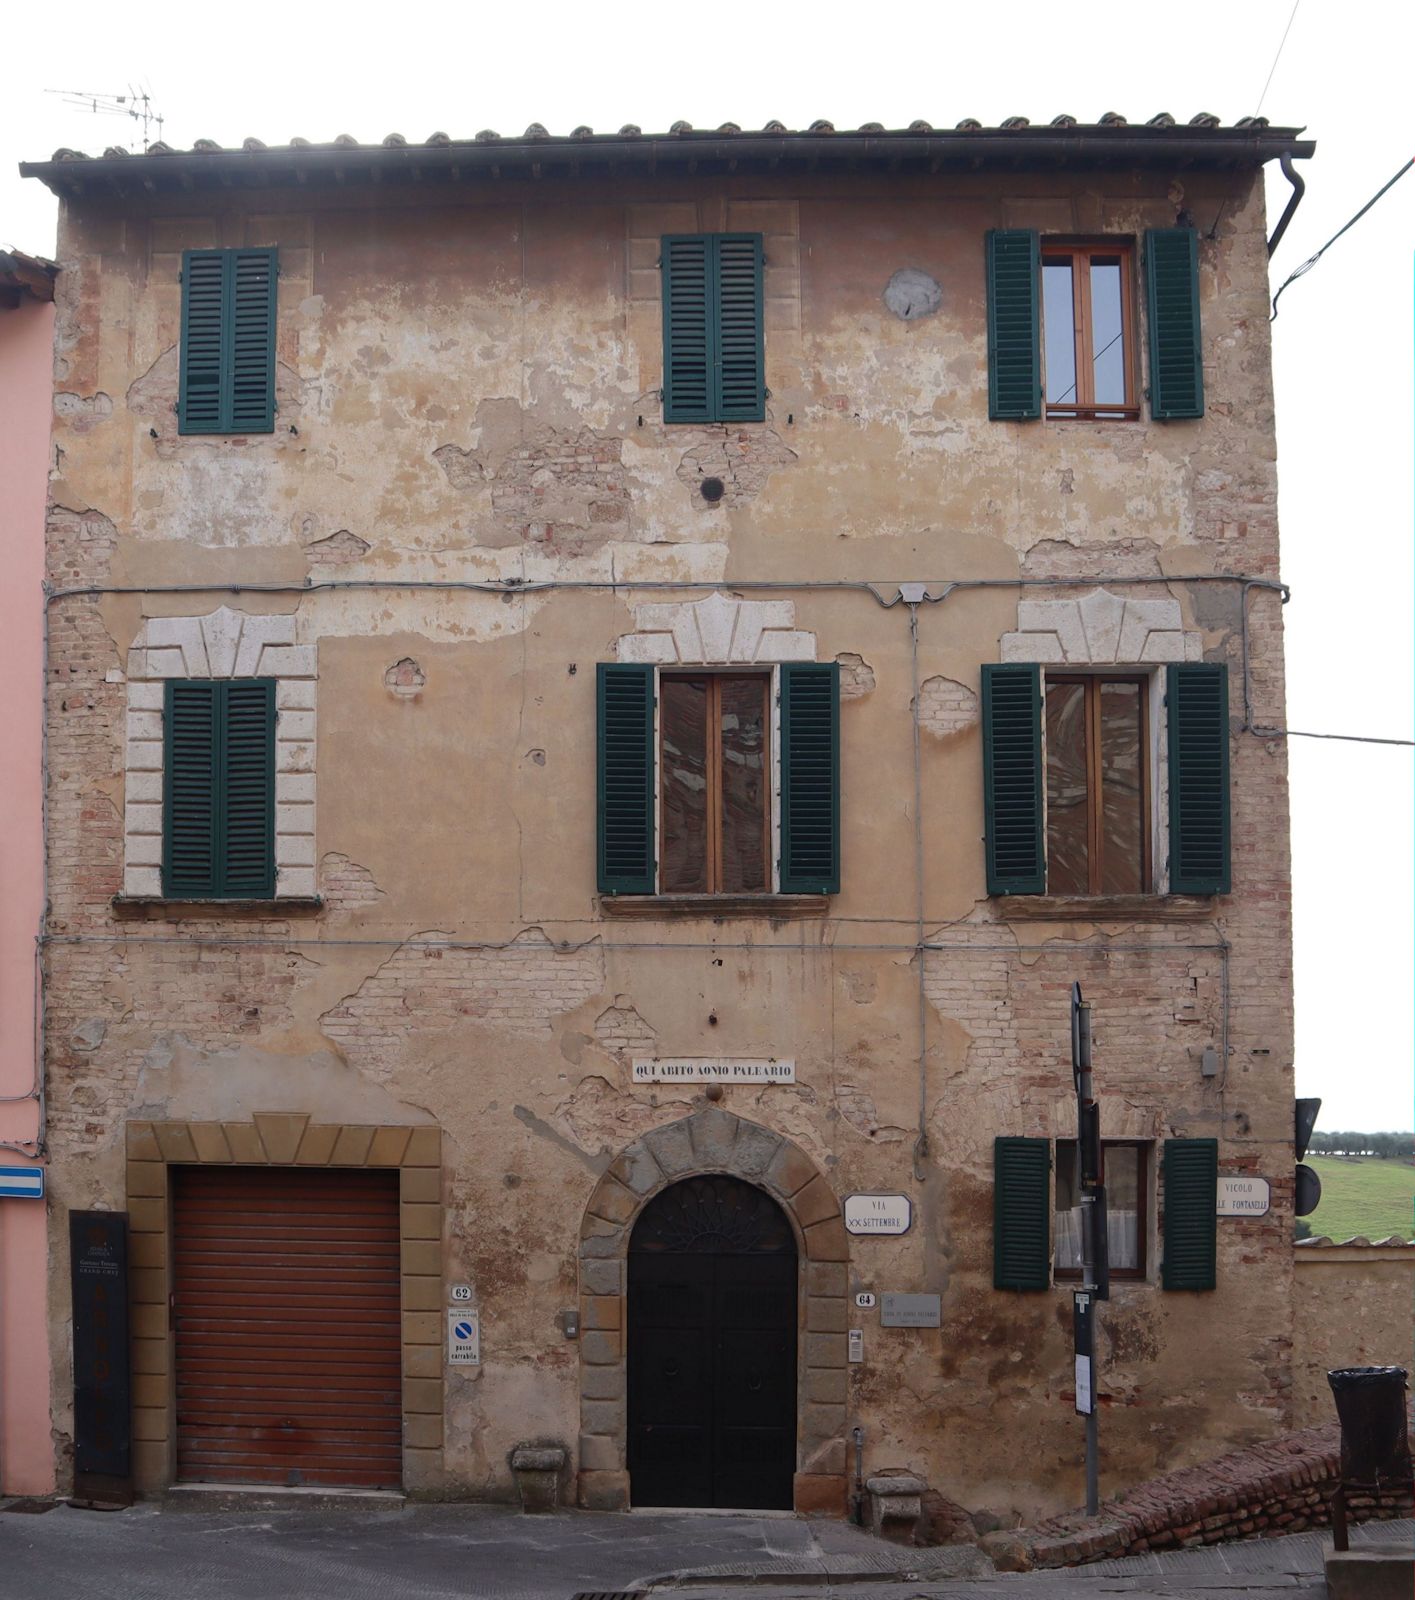 Aonio Palearios Haus in Colle di Val d'Elsa mit Inschrift, die an den einstigen Bewohner erinnert